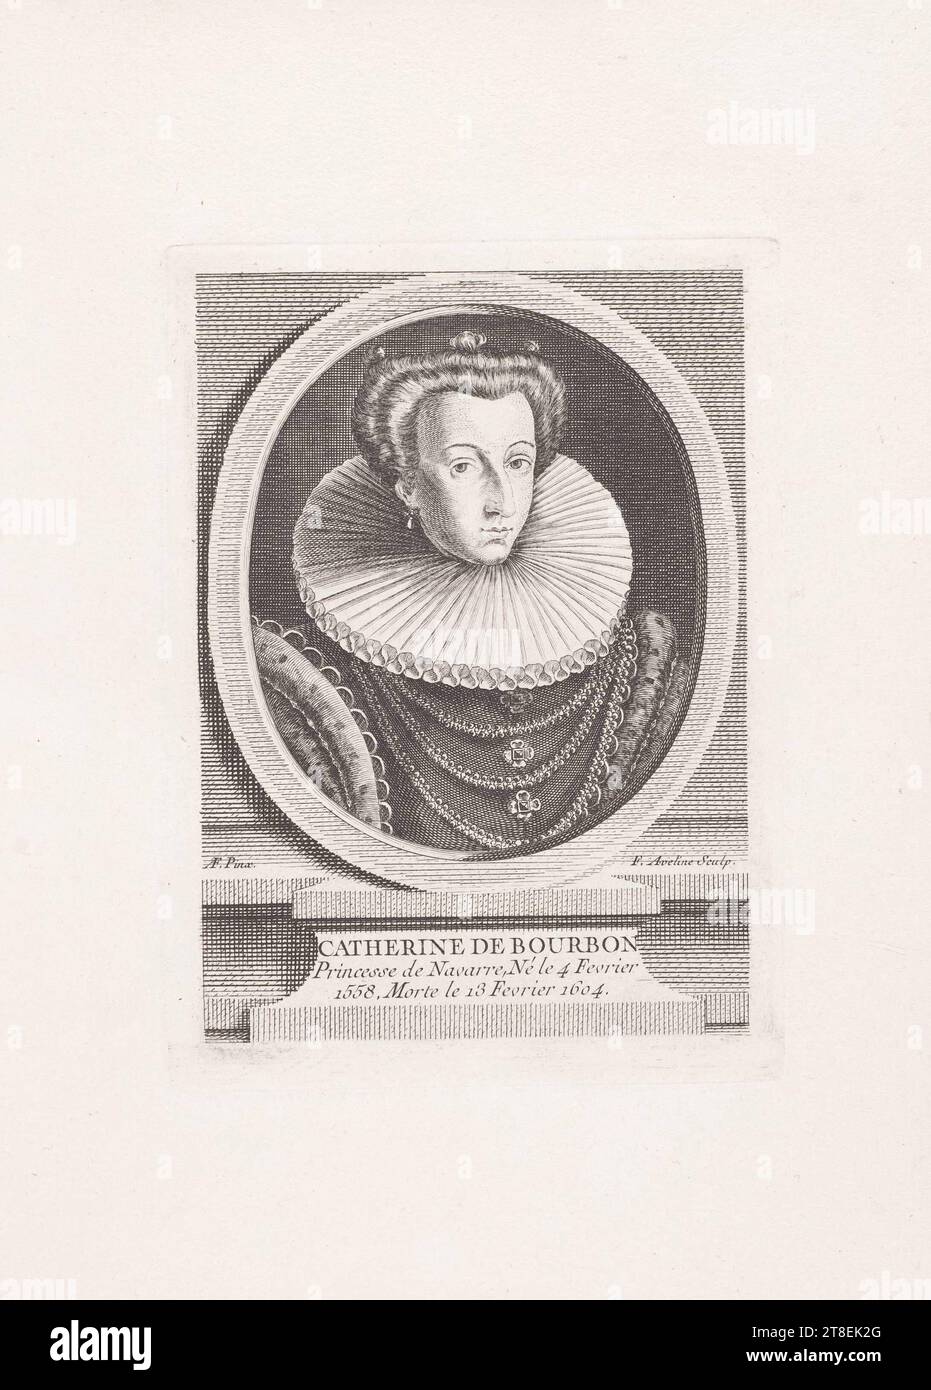 AF. Pinx. F. Aveline Sculp. CATHERINE DE BOURBON Princesse de Navarre, née le 4 février 1558, décédée le 13 février 1604 Banque D'Images